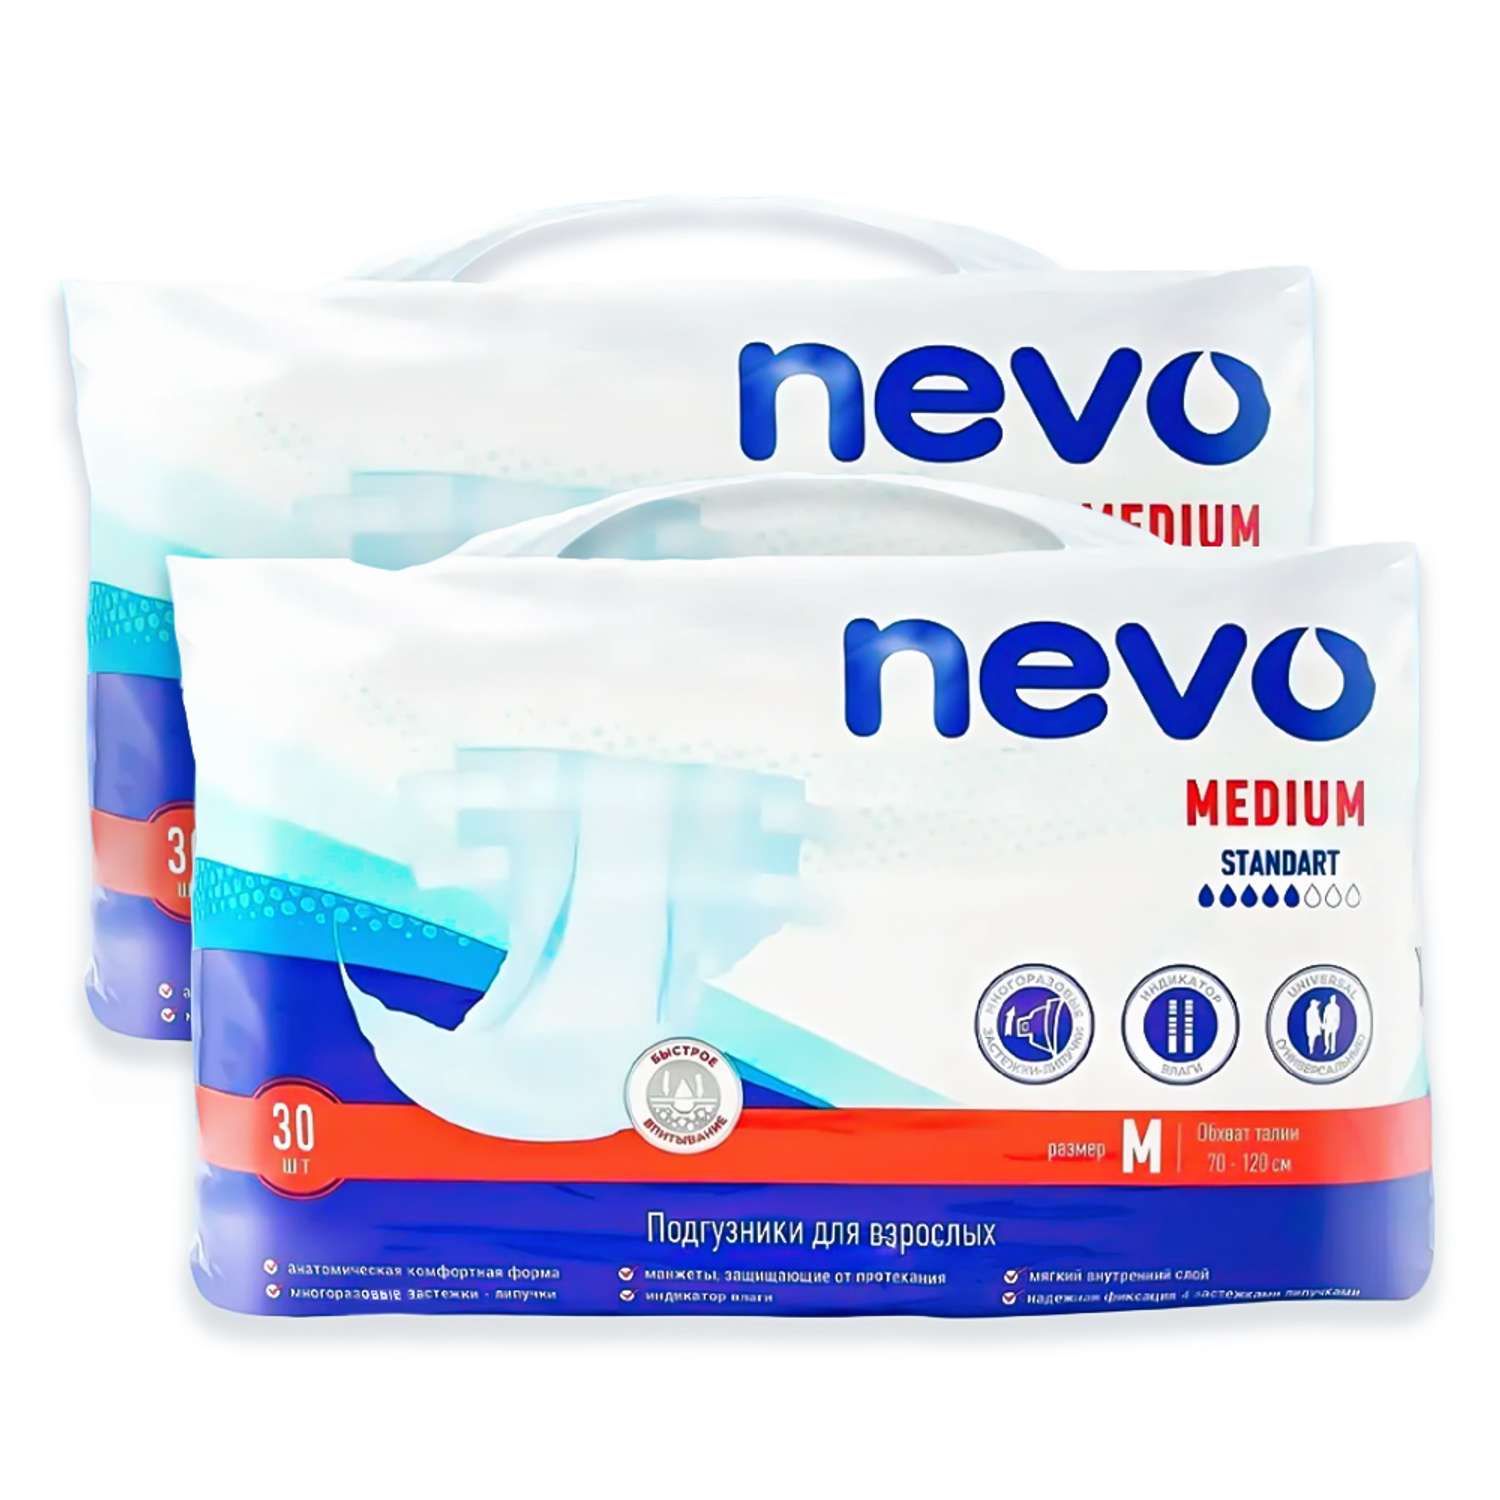 Подгузники для взрослых Nevo Medium Standart Размер М 2 упаковки по 30 шт - фото 1